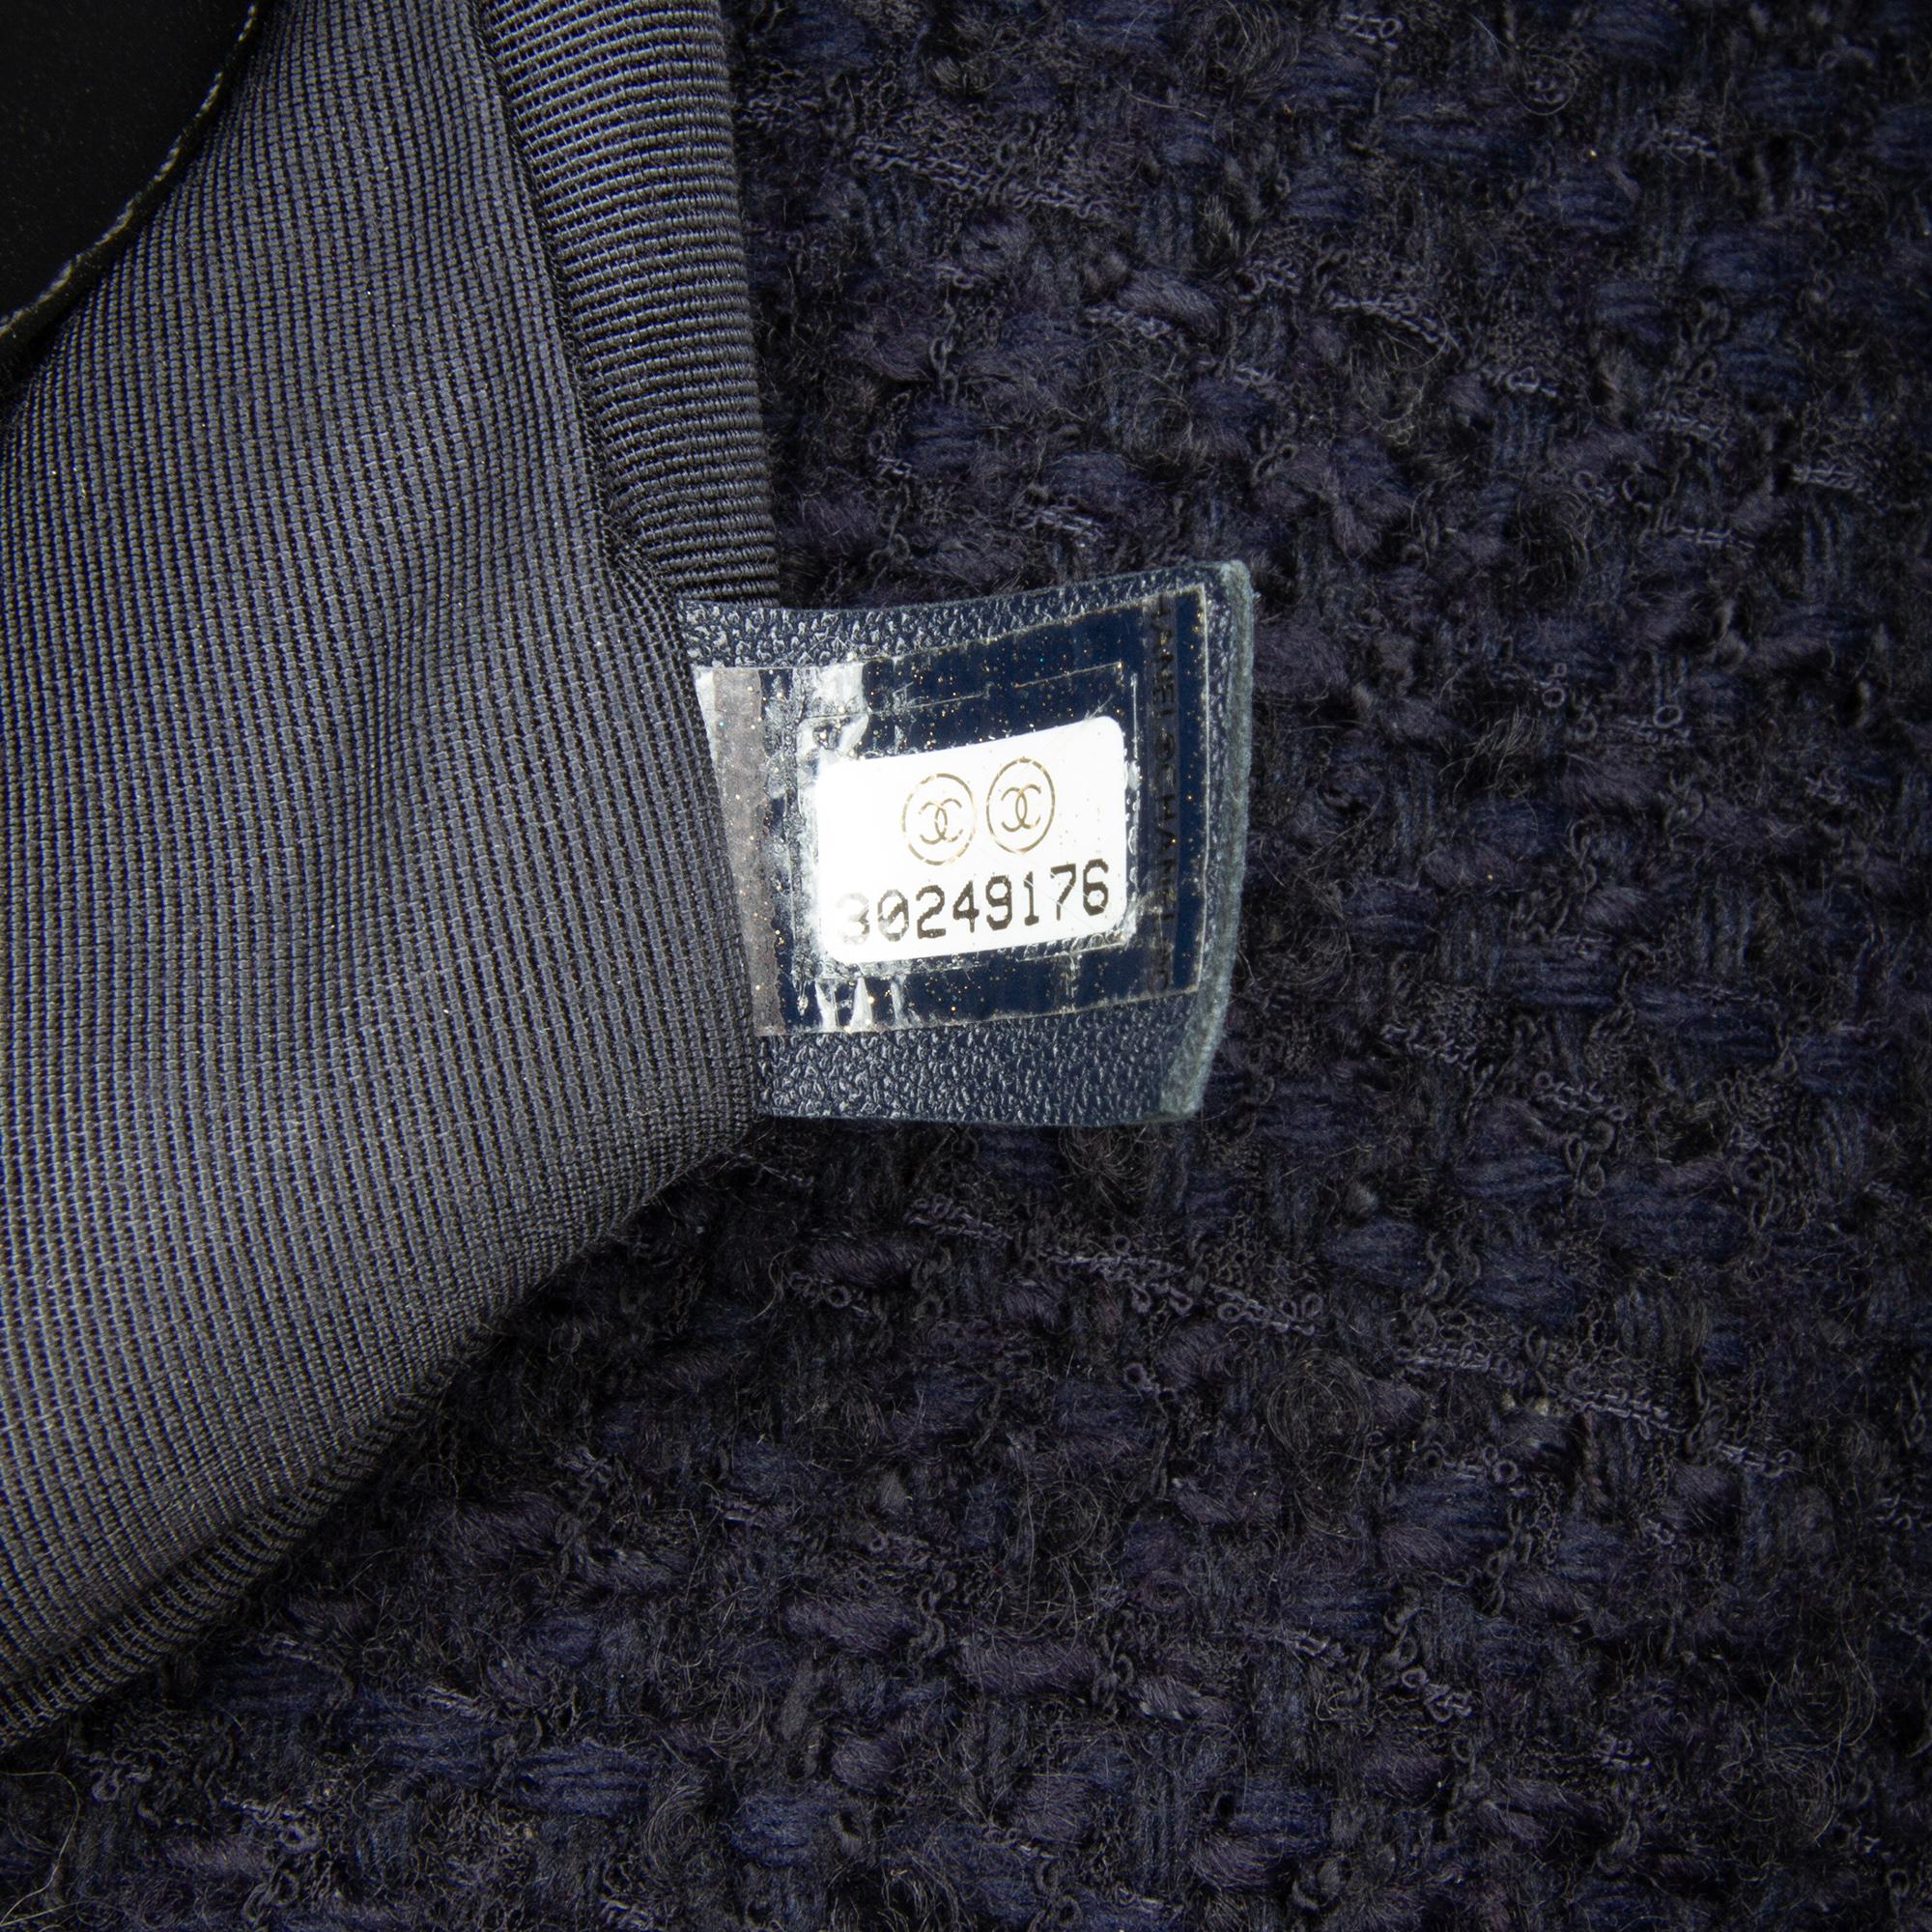 Chanel Black Large Tweed 19 Flap Bag